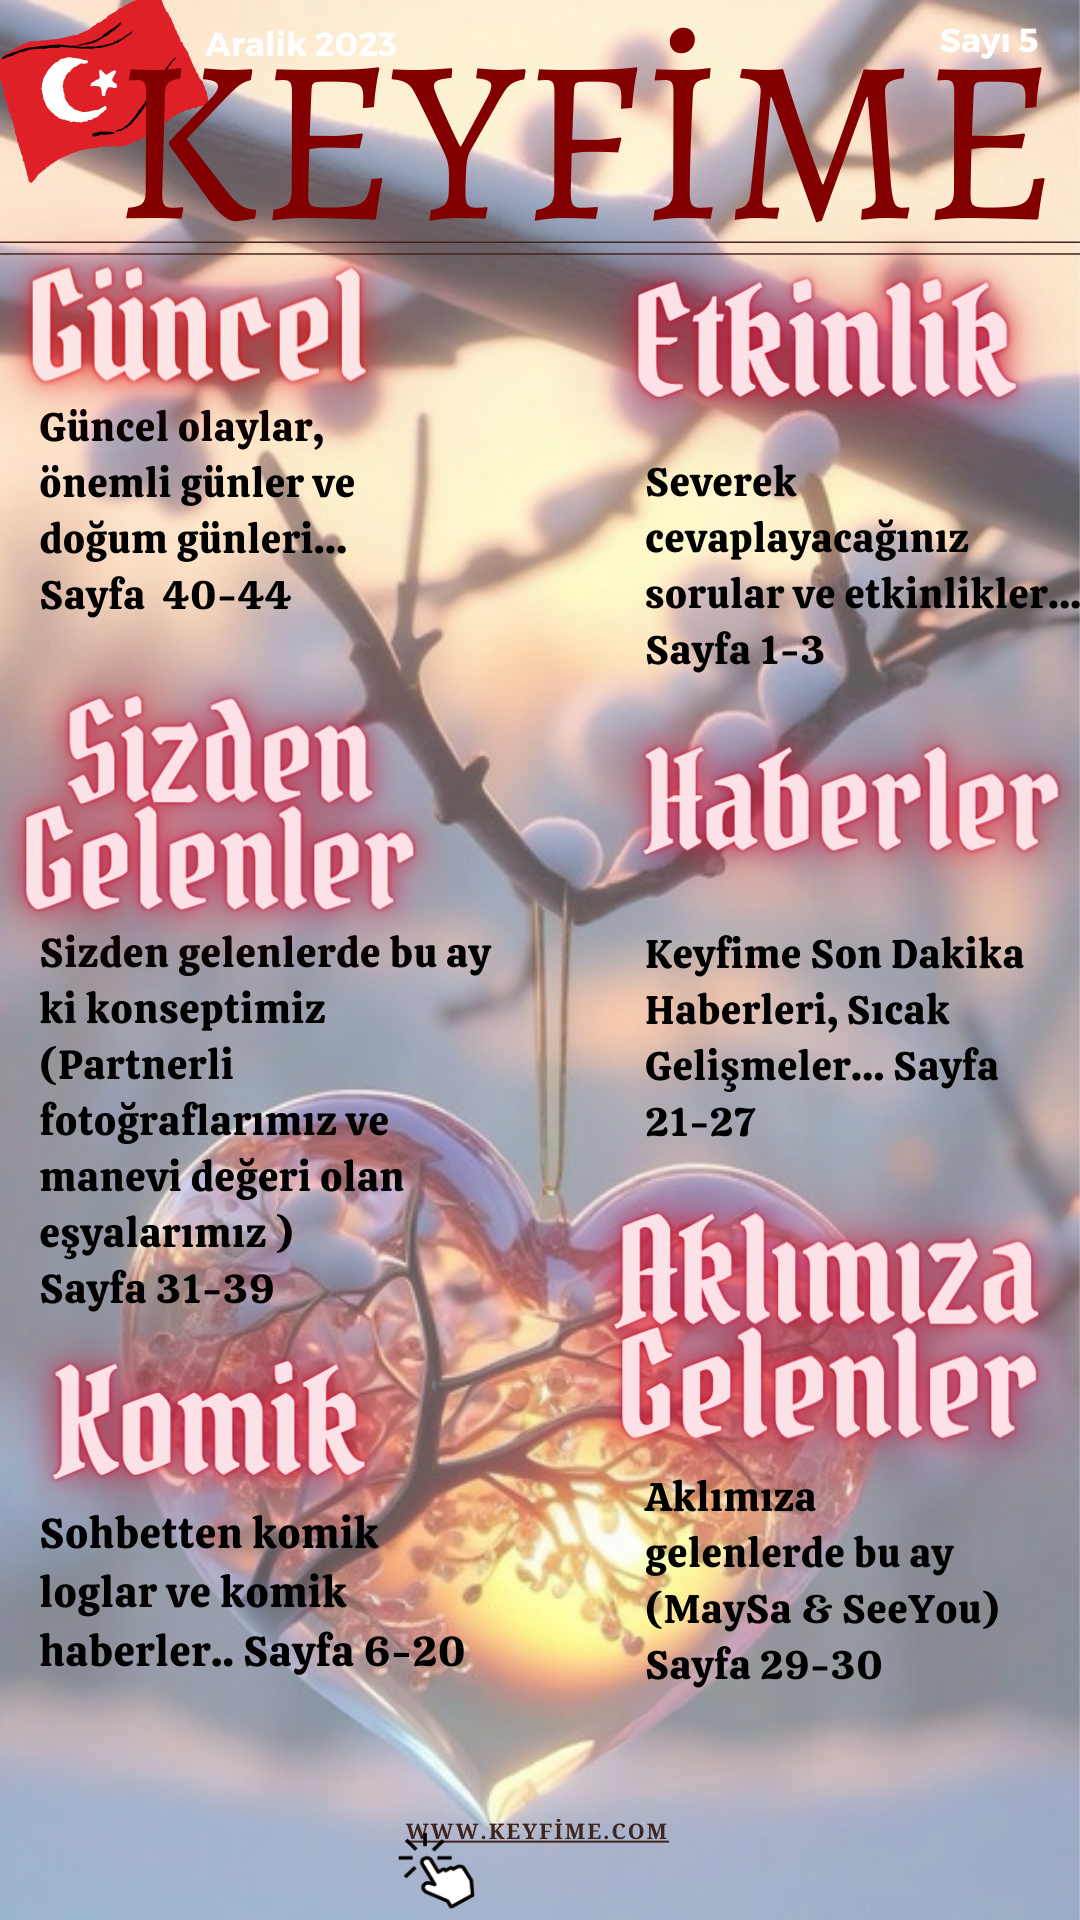 WWW.KEYFİME.COM GAZETESİ 6.